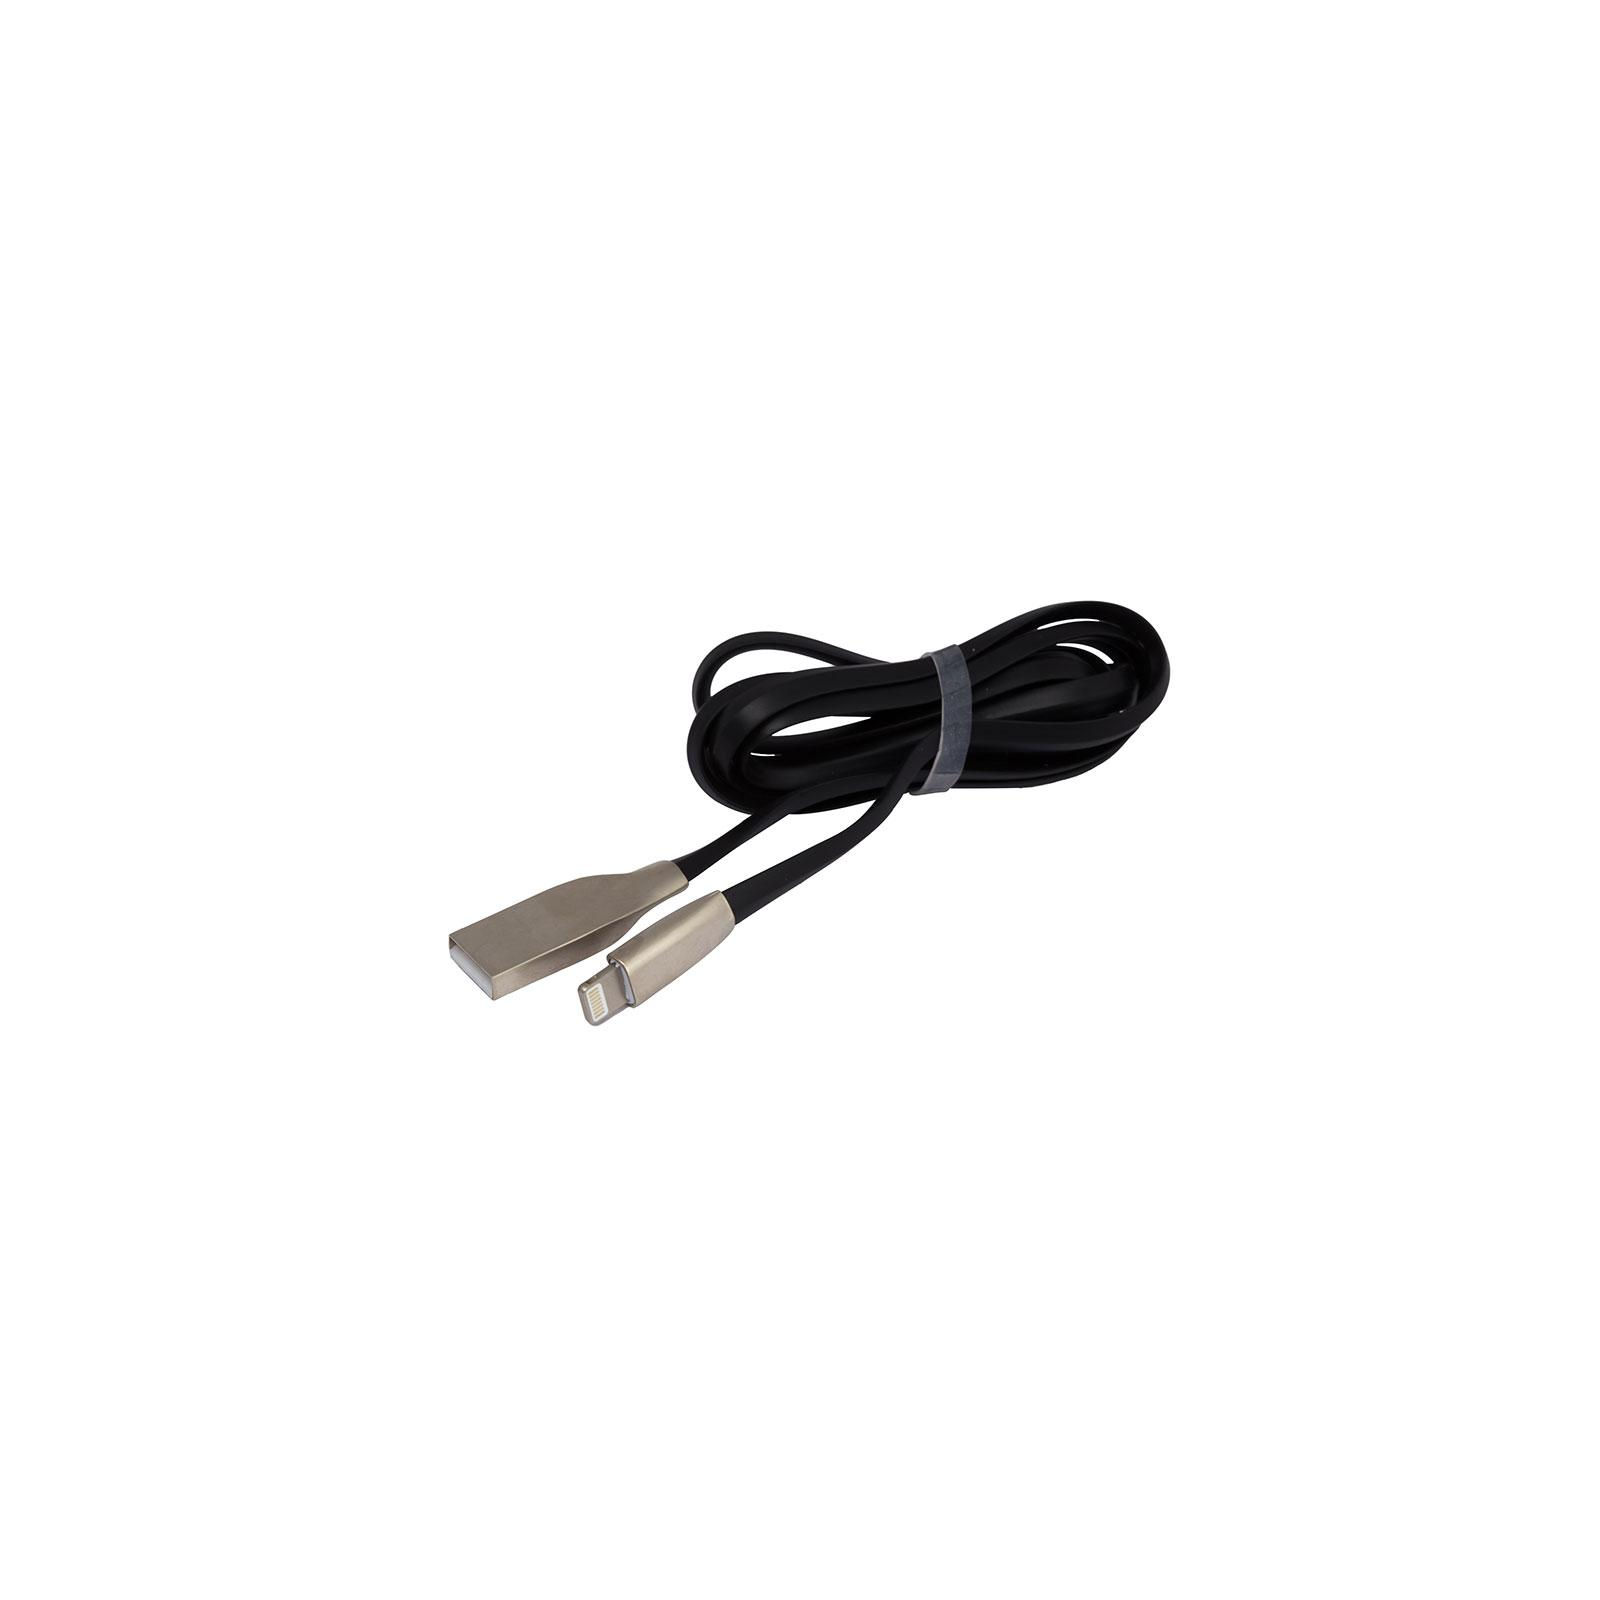 Дата кабель USB 2.0 AM to Lightning 1.0m DC-IP-102ZR black Greenwave (R0014163) изображение 2